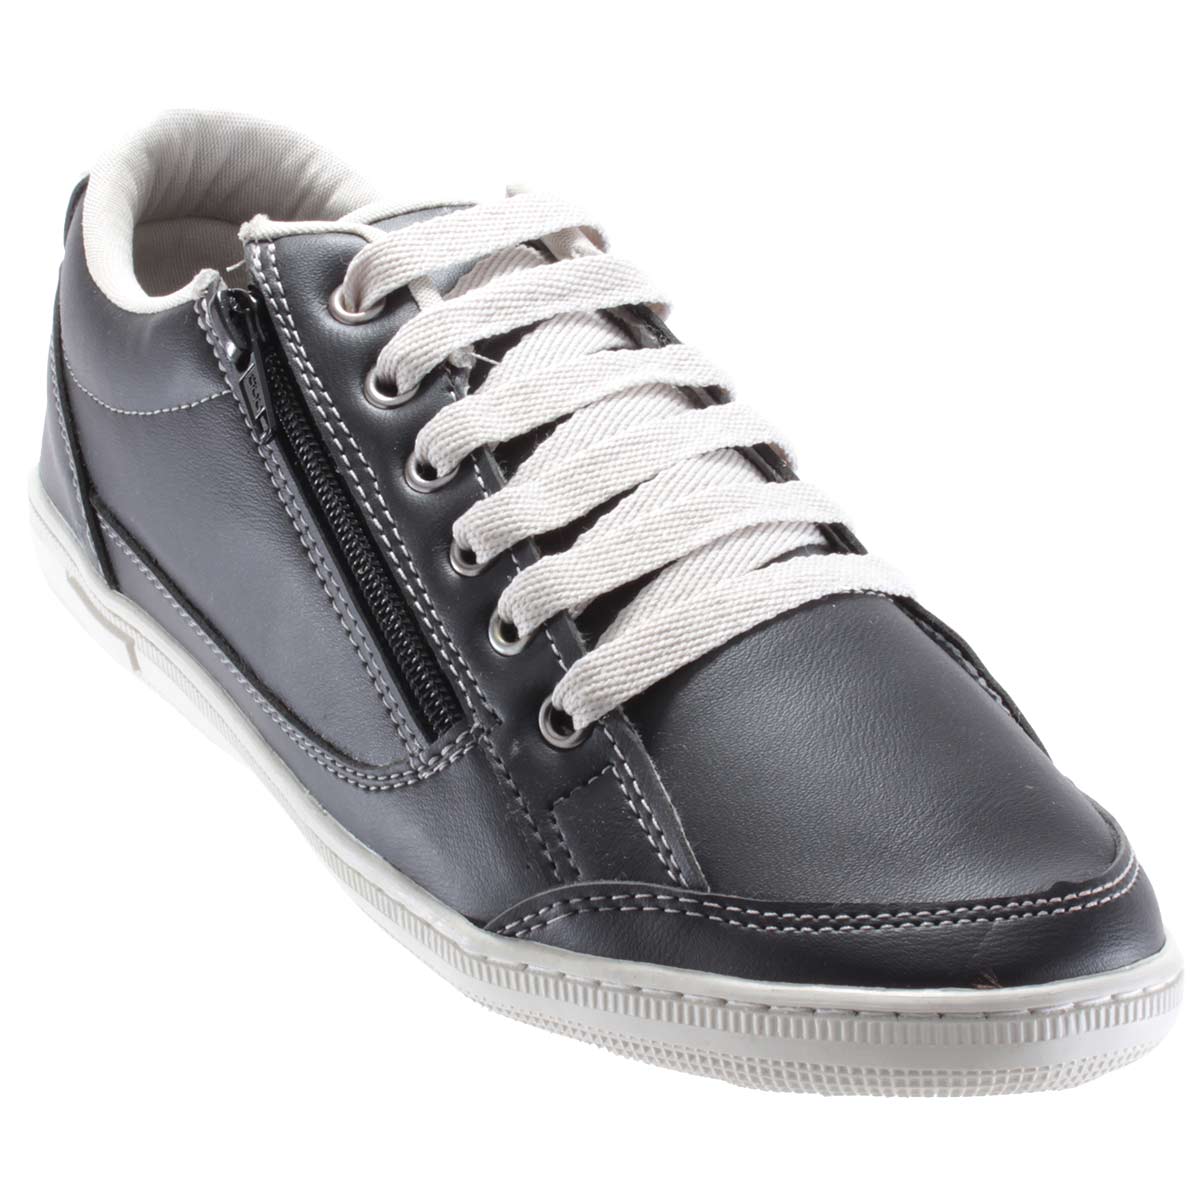 Sapatênis Doc Shoes Sintético Casual Ziper Confortável 7124C